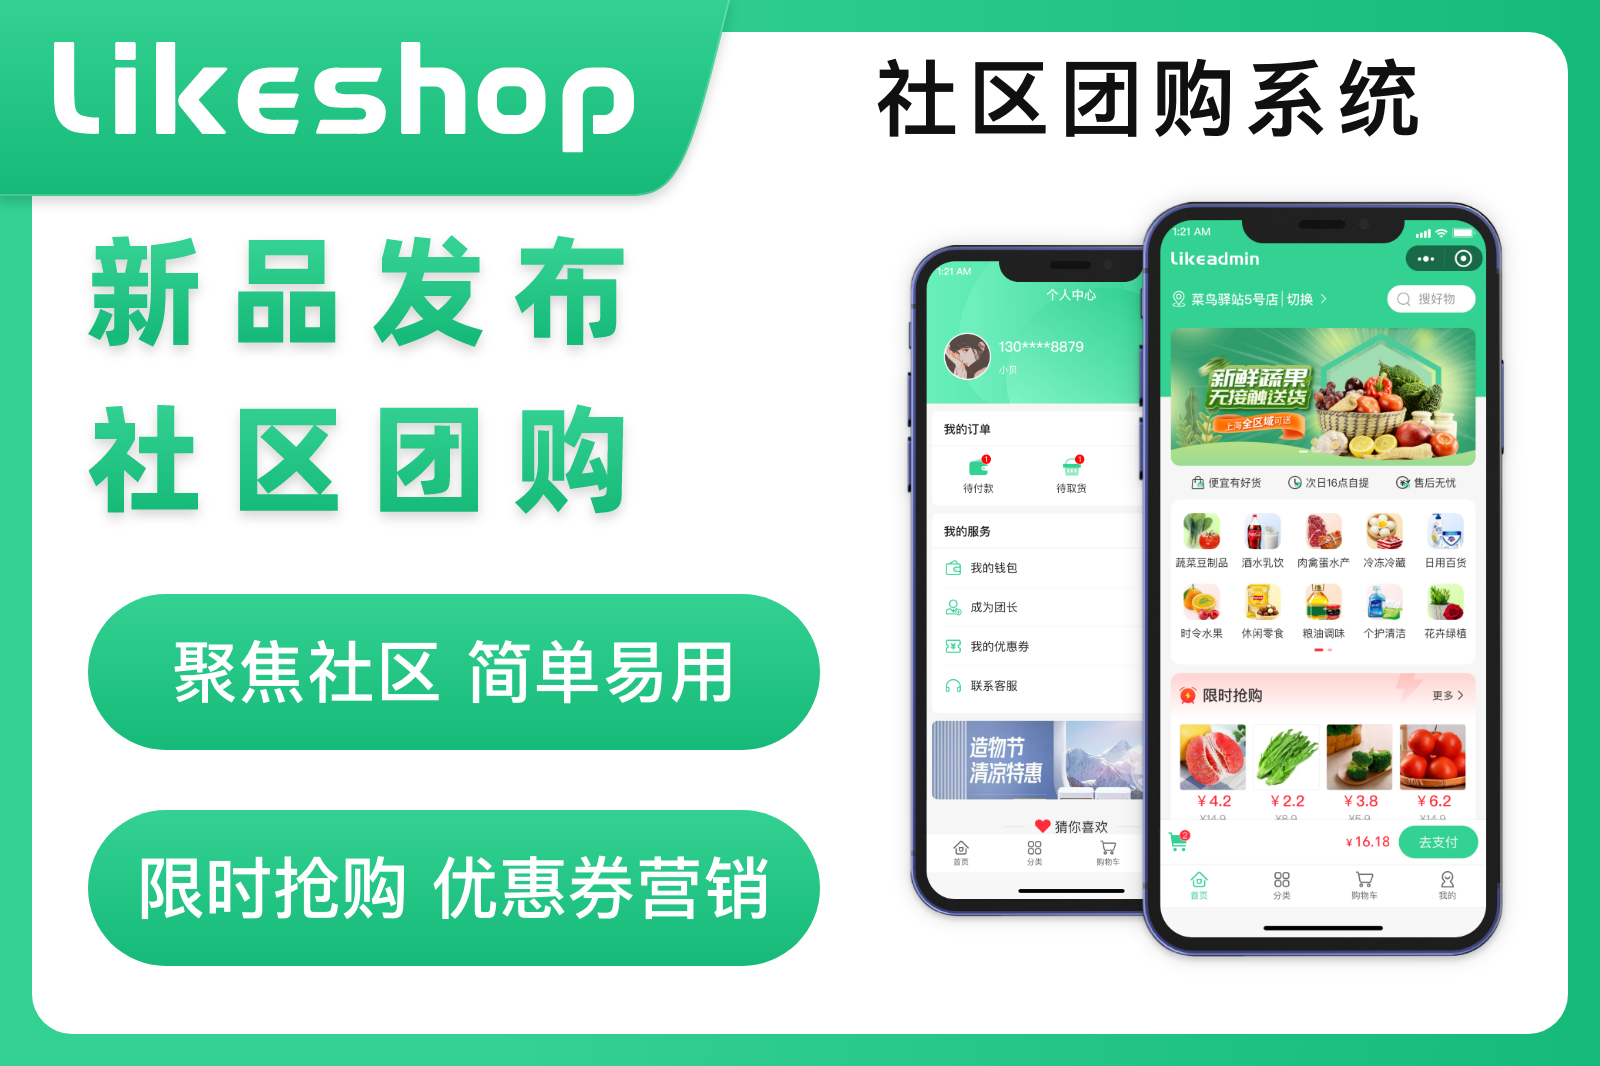 likeshop社区团购系统【企业版】便捷，实惠，在线购物平台，自提模式